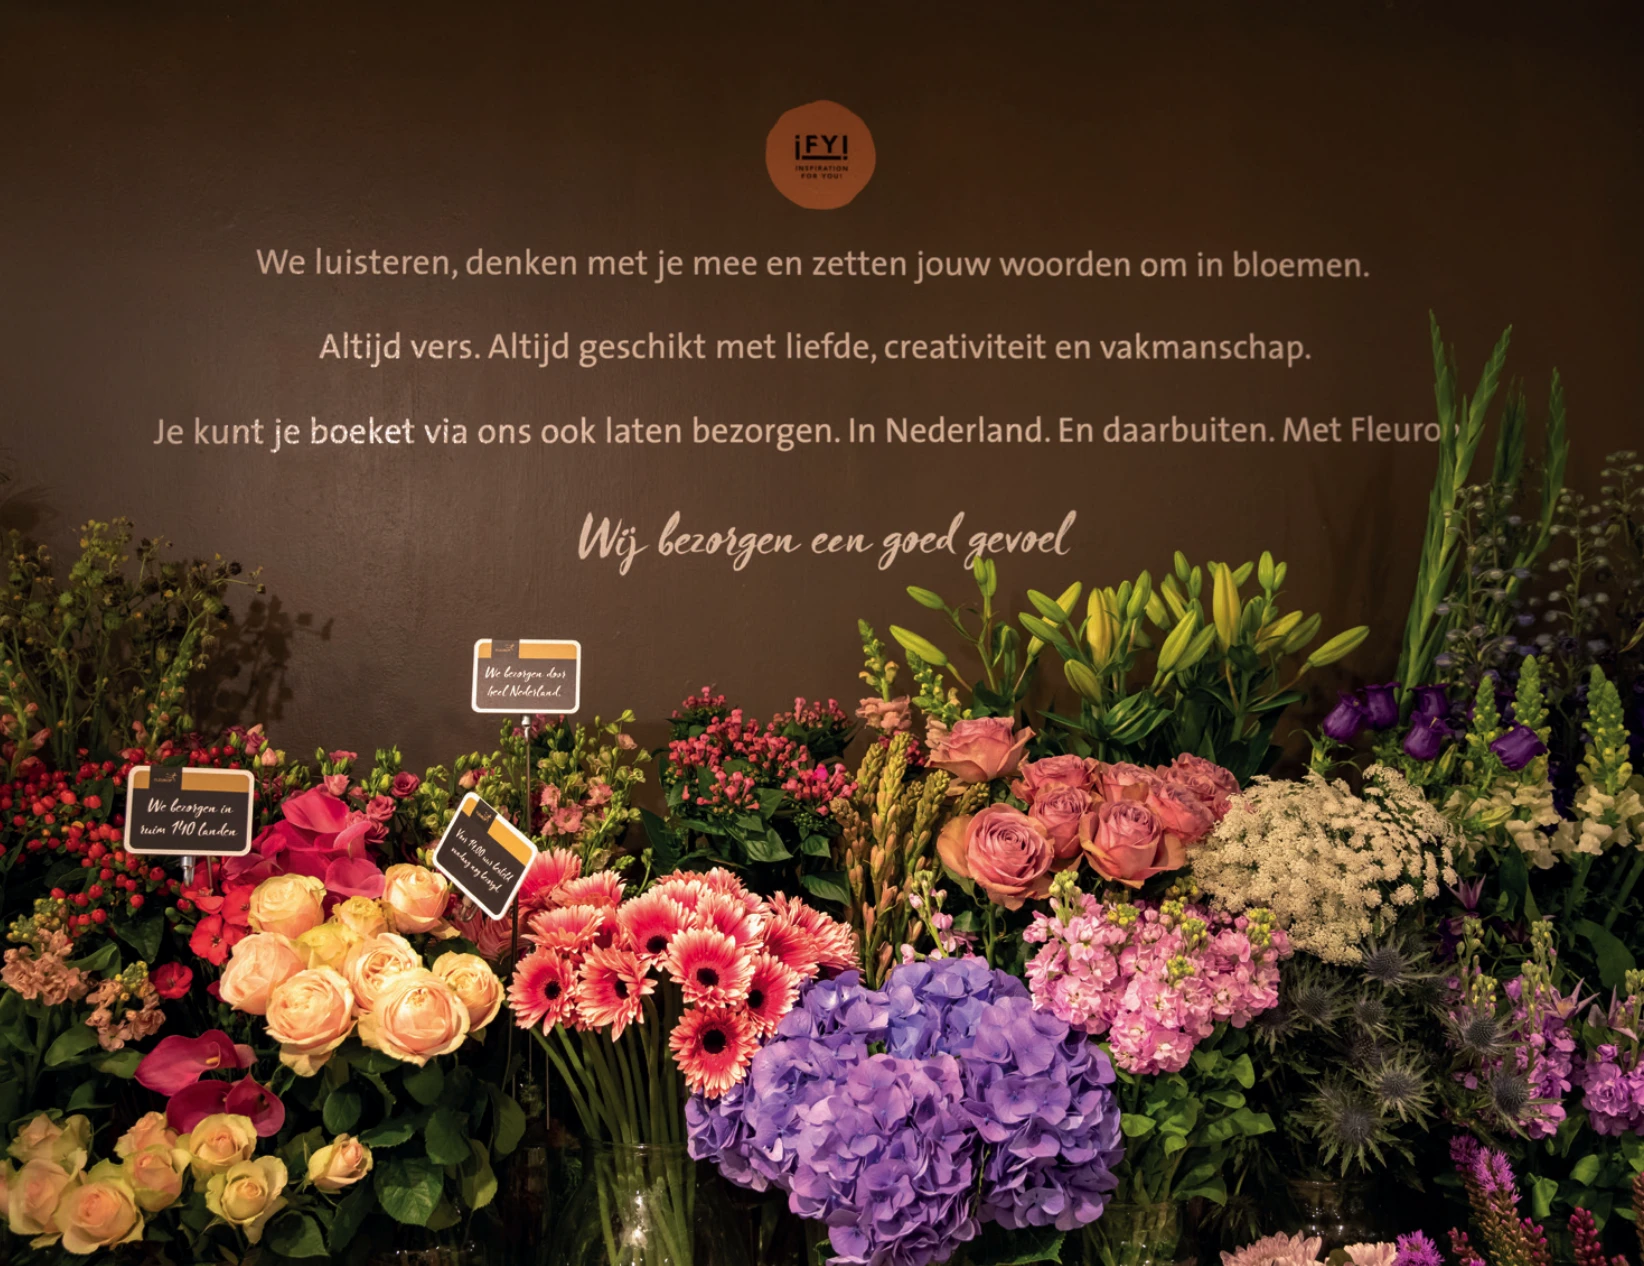 Flowershop Achttienhoven Bloemen bestellen.